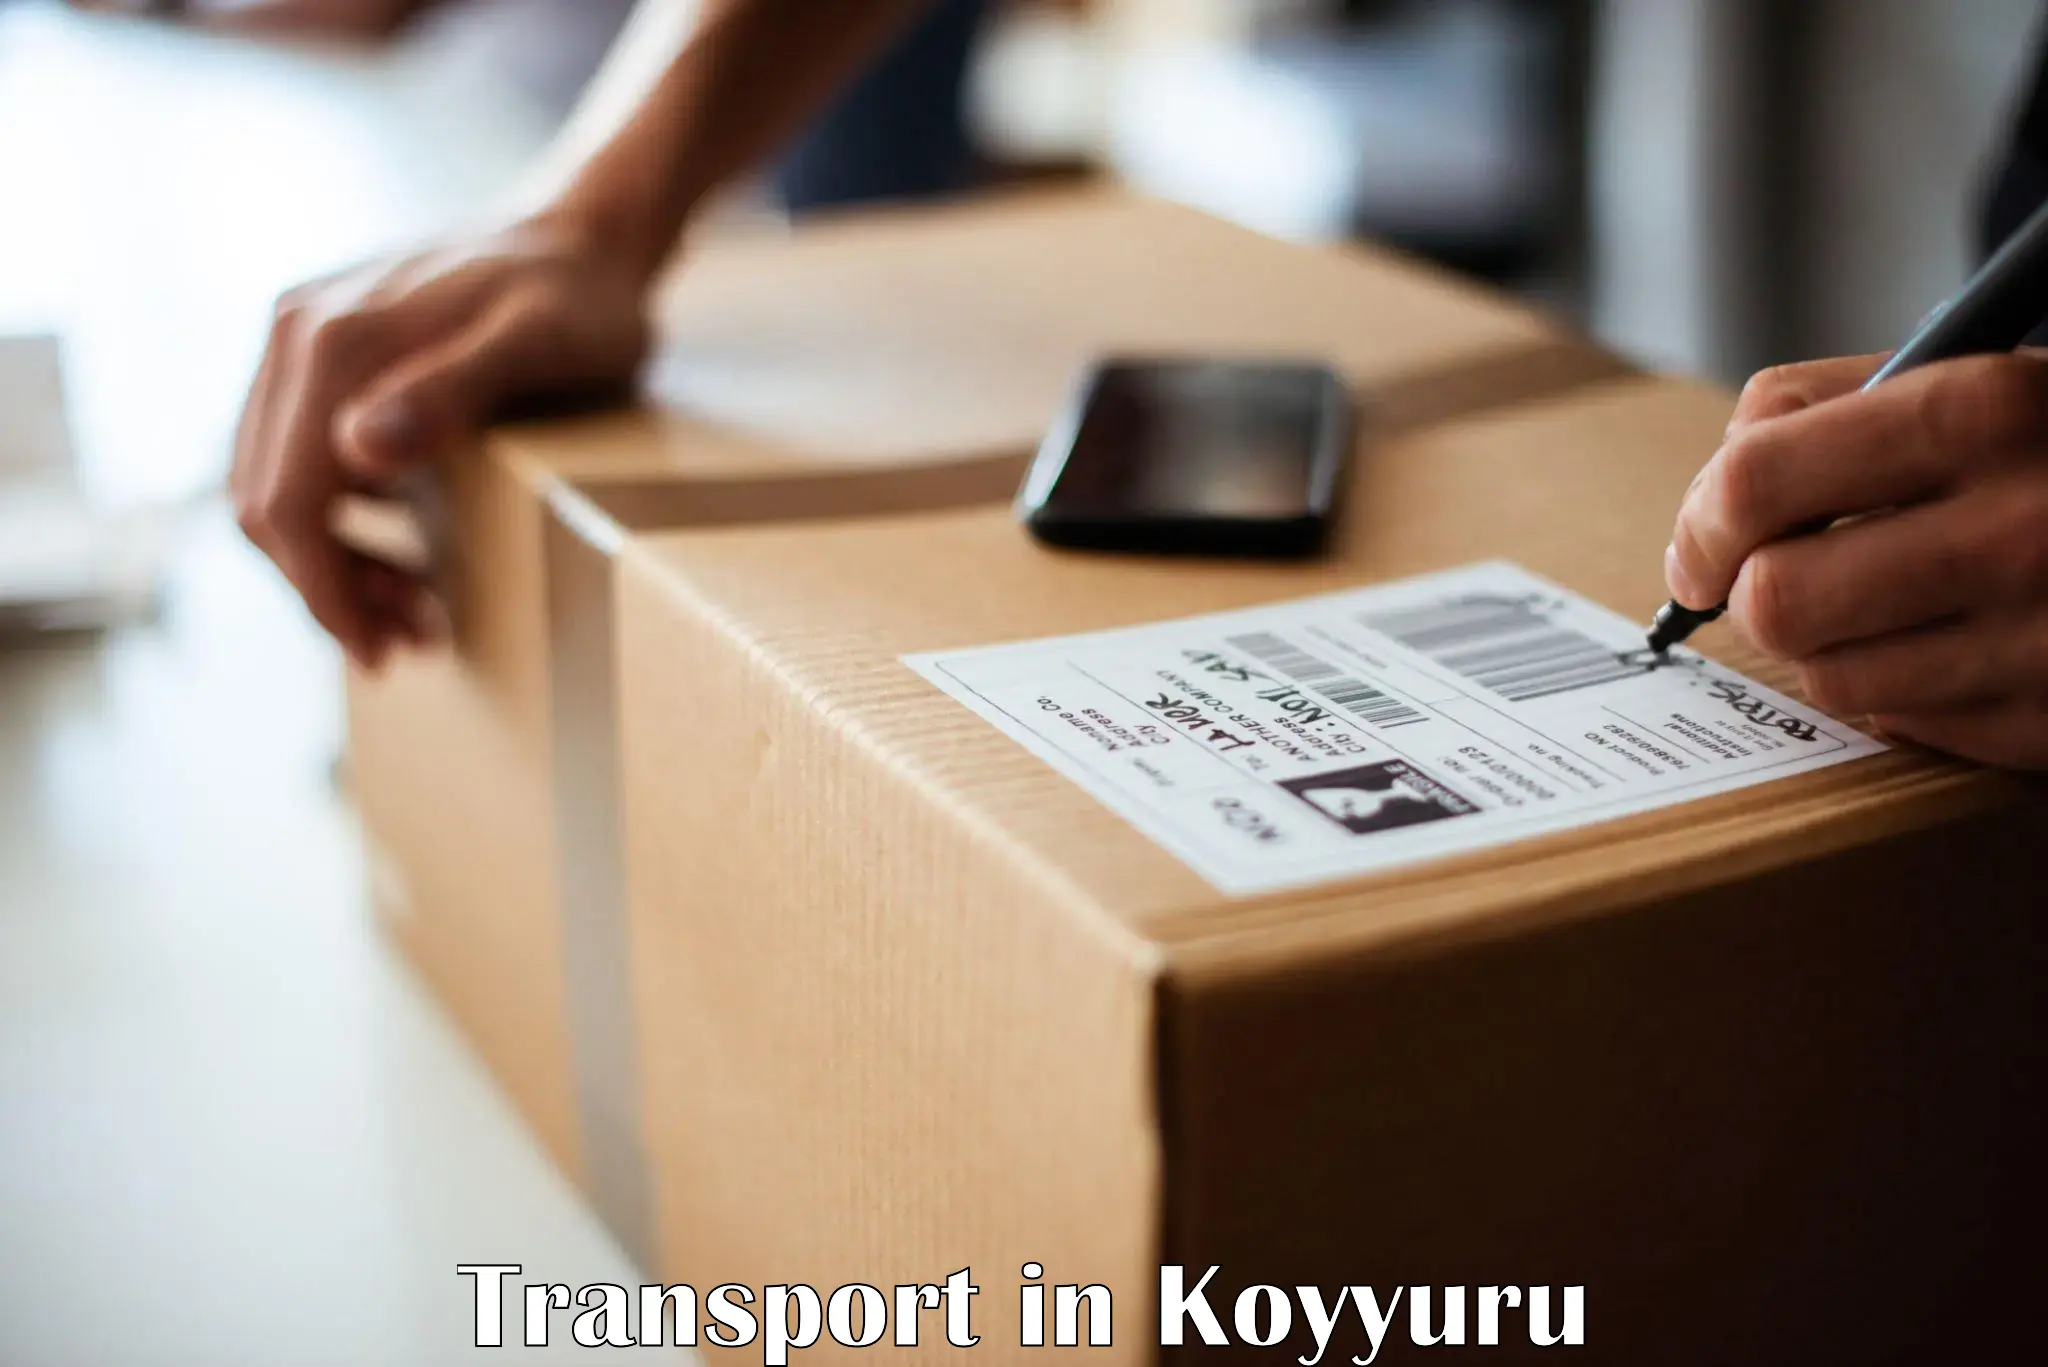 Online transport service in Koyyuru